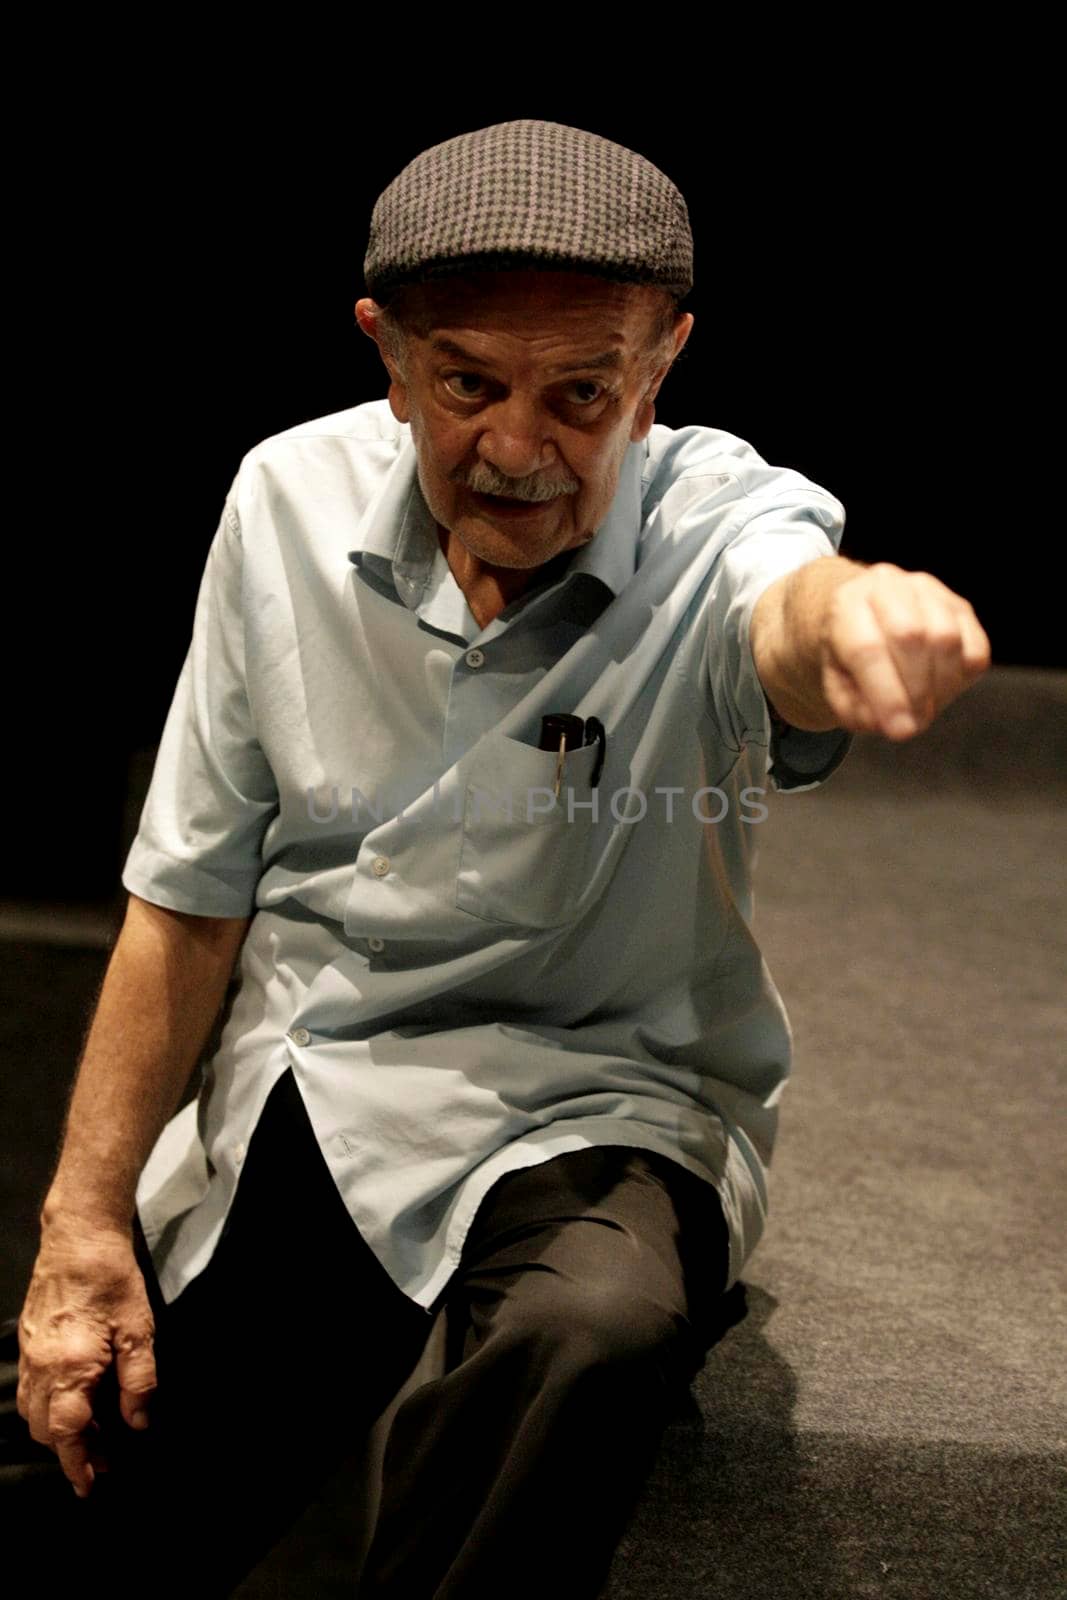 harildo dede, actor and director by joasouza